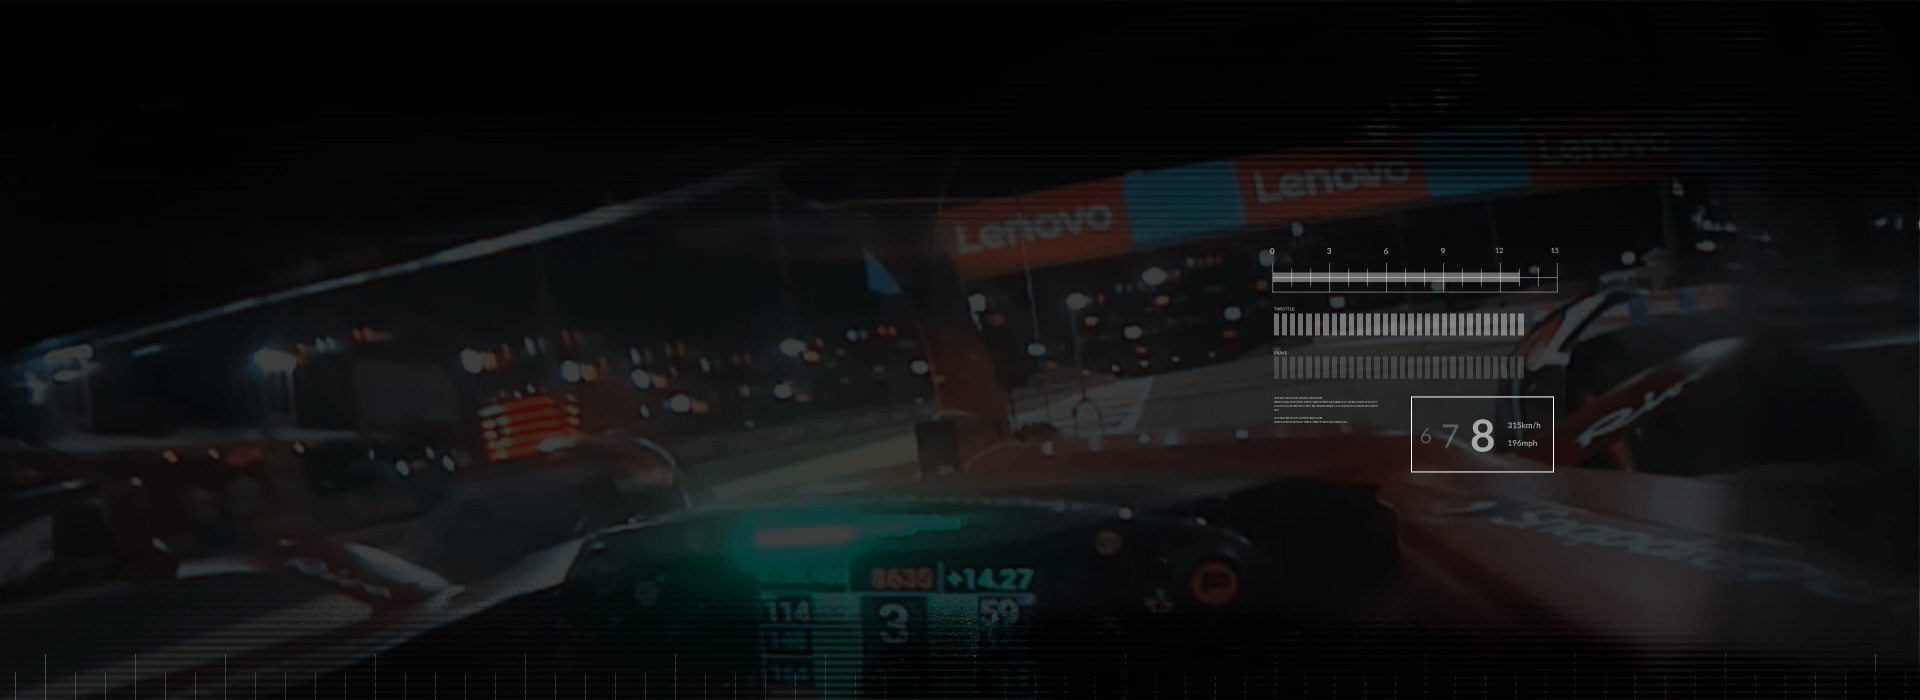 Vue intérieure d’un pilote de voiture de course de F1 passant devant des bannières Lenovo sur un circuit